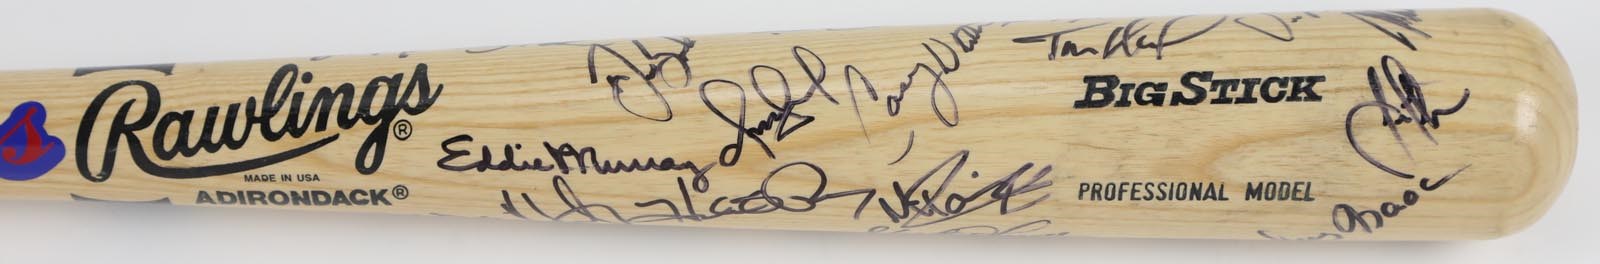 Baseball Autographs - 1997 Cleveland Indians Signed Bat